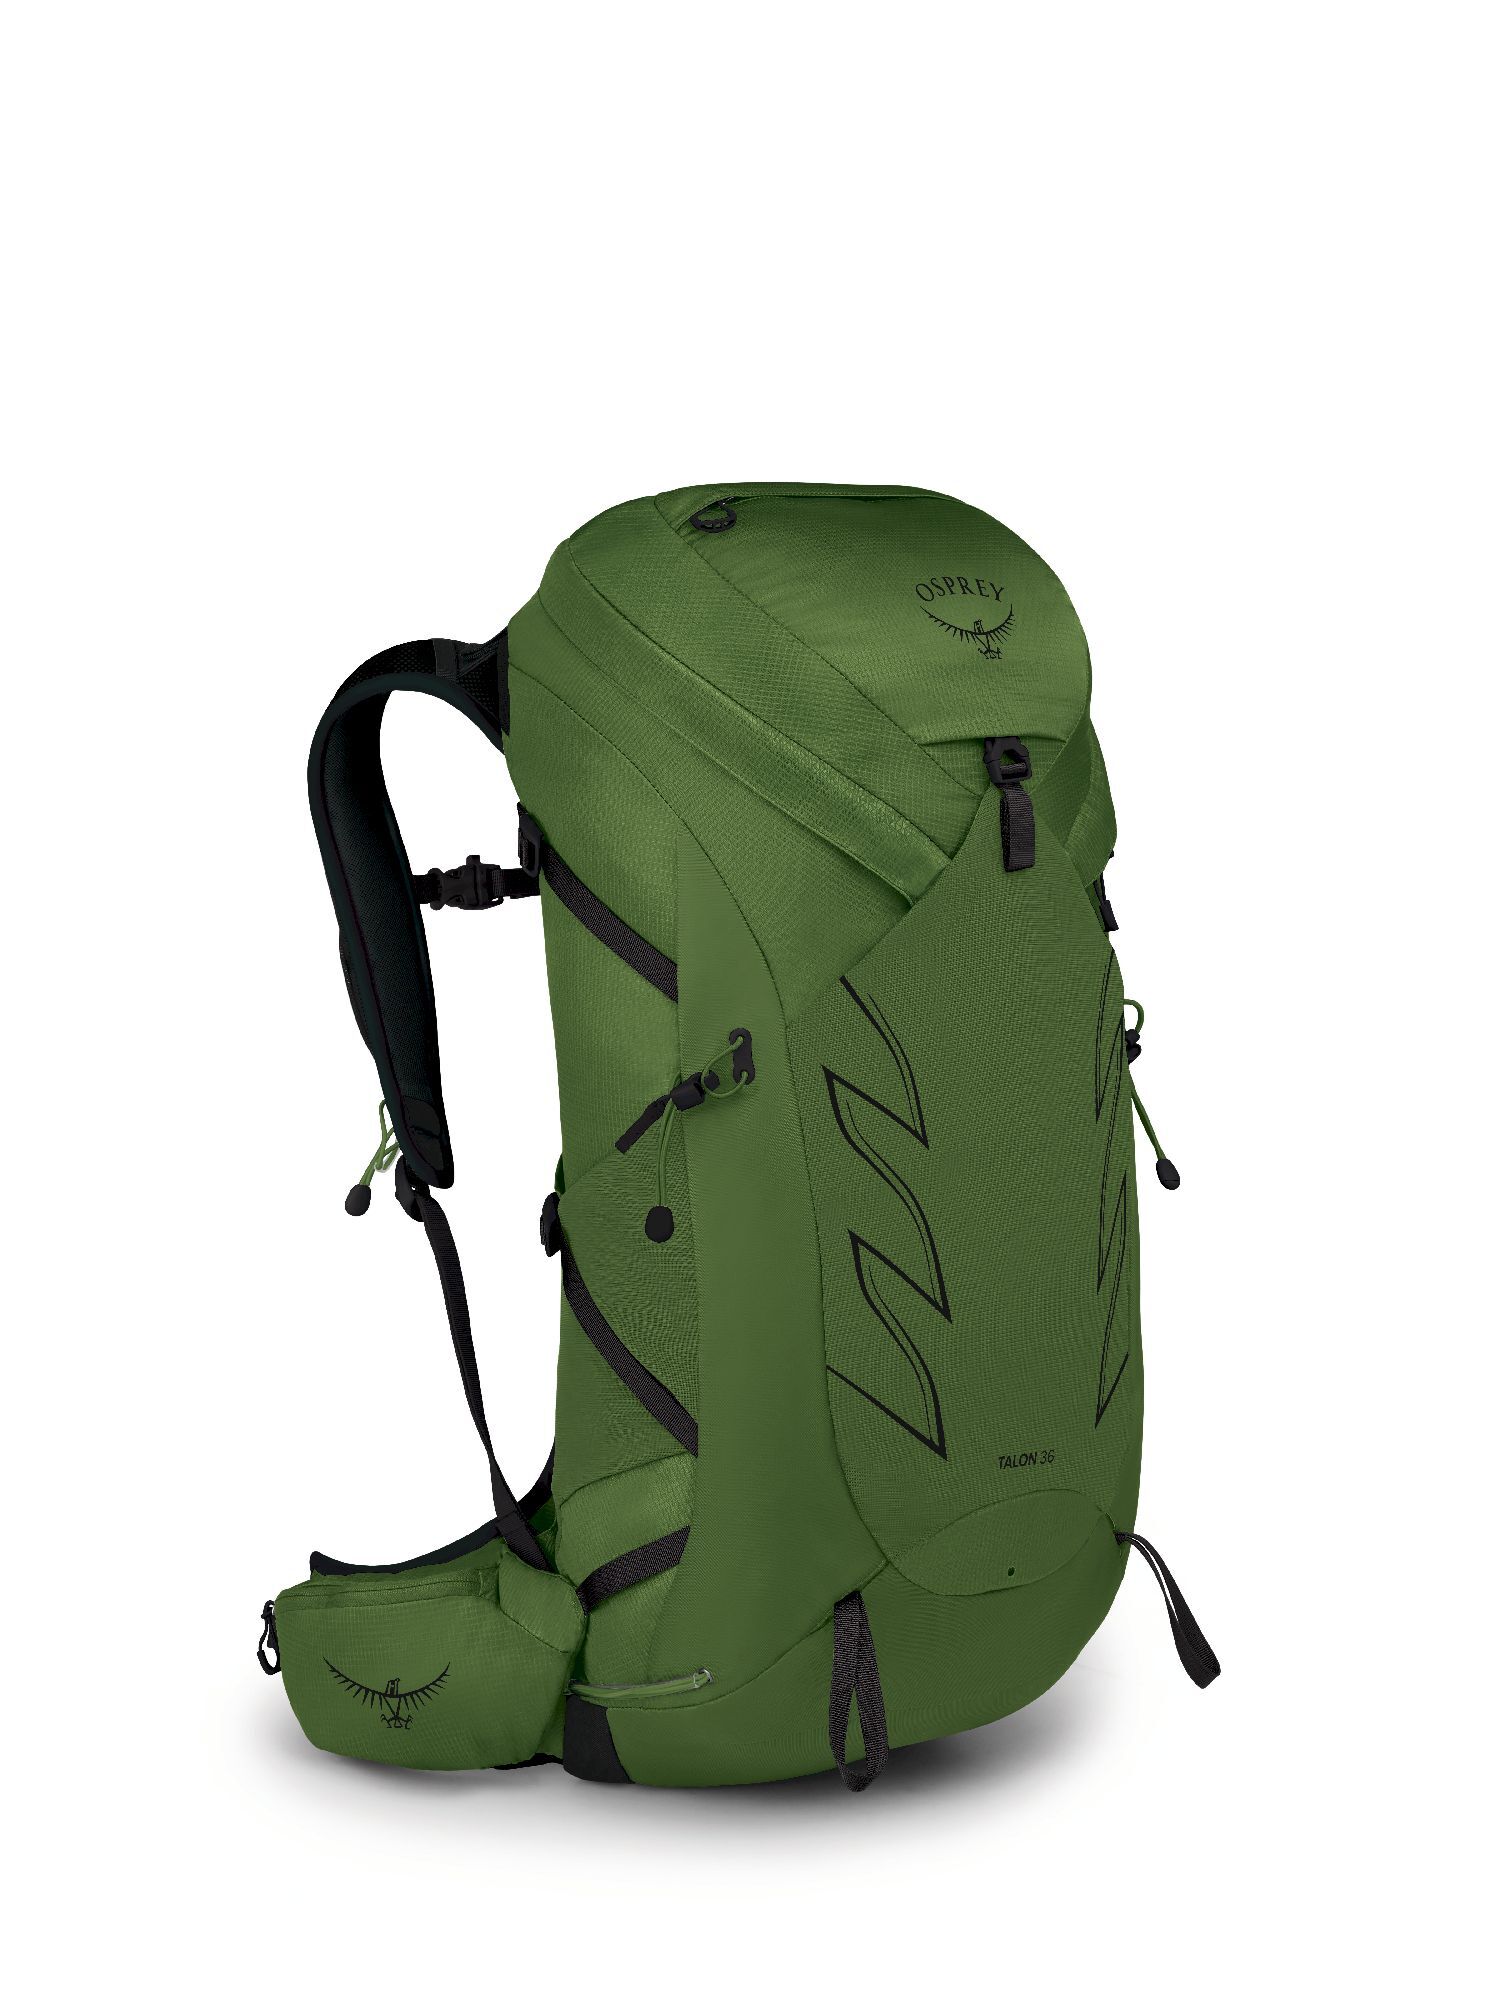 Osprey Talon 36 - Walking backpack - Men's